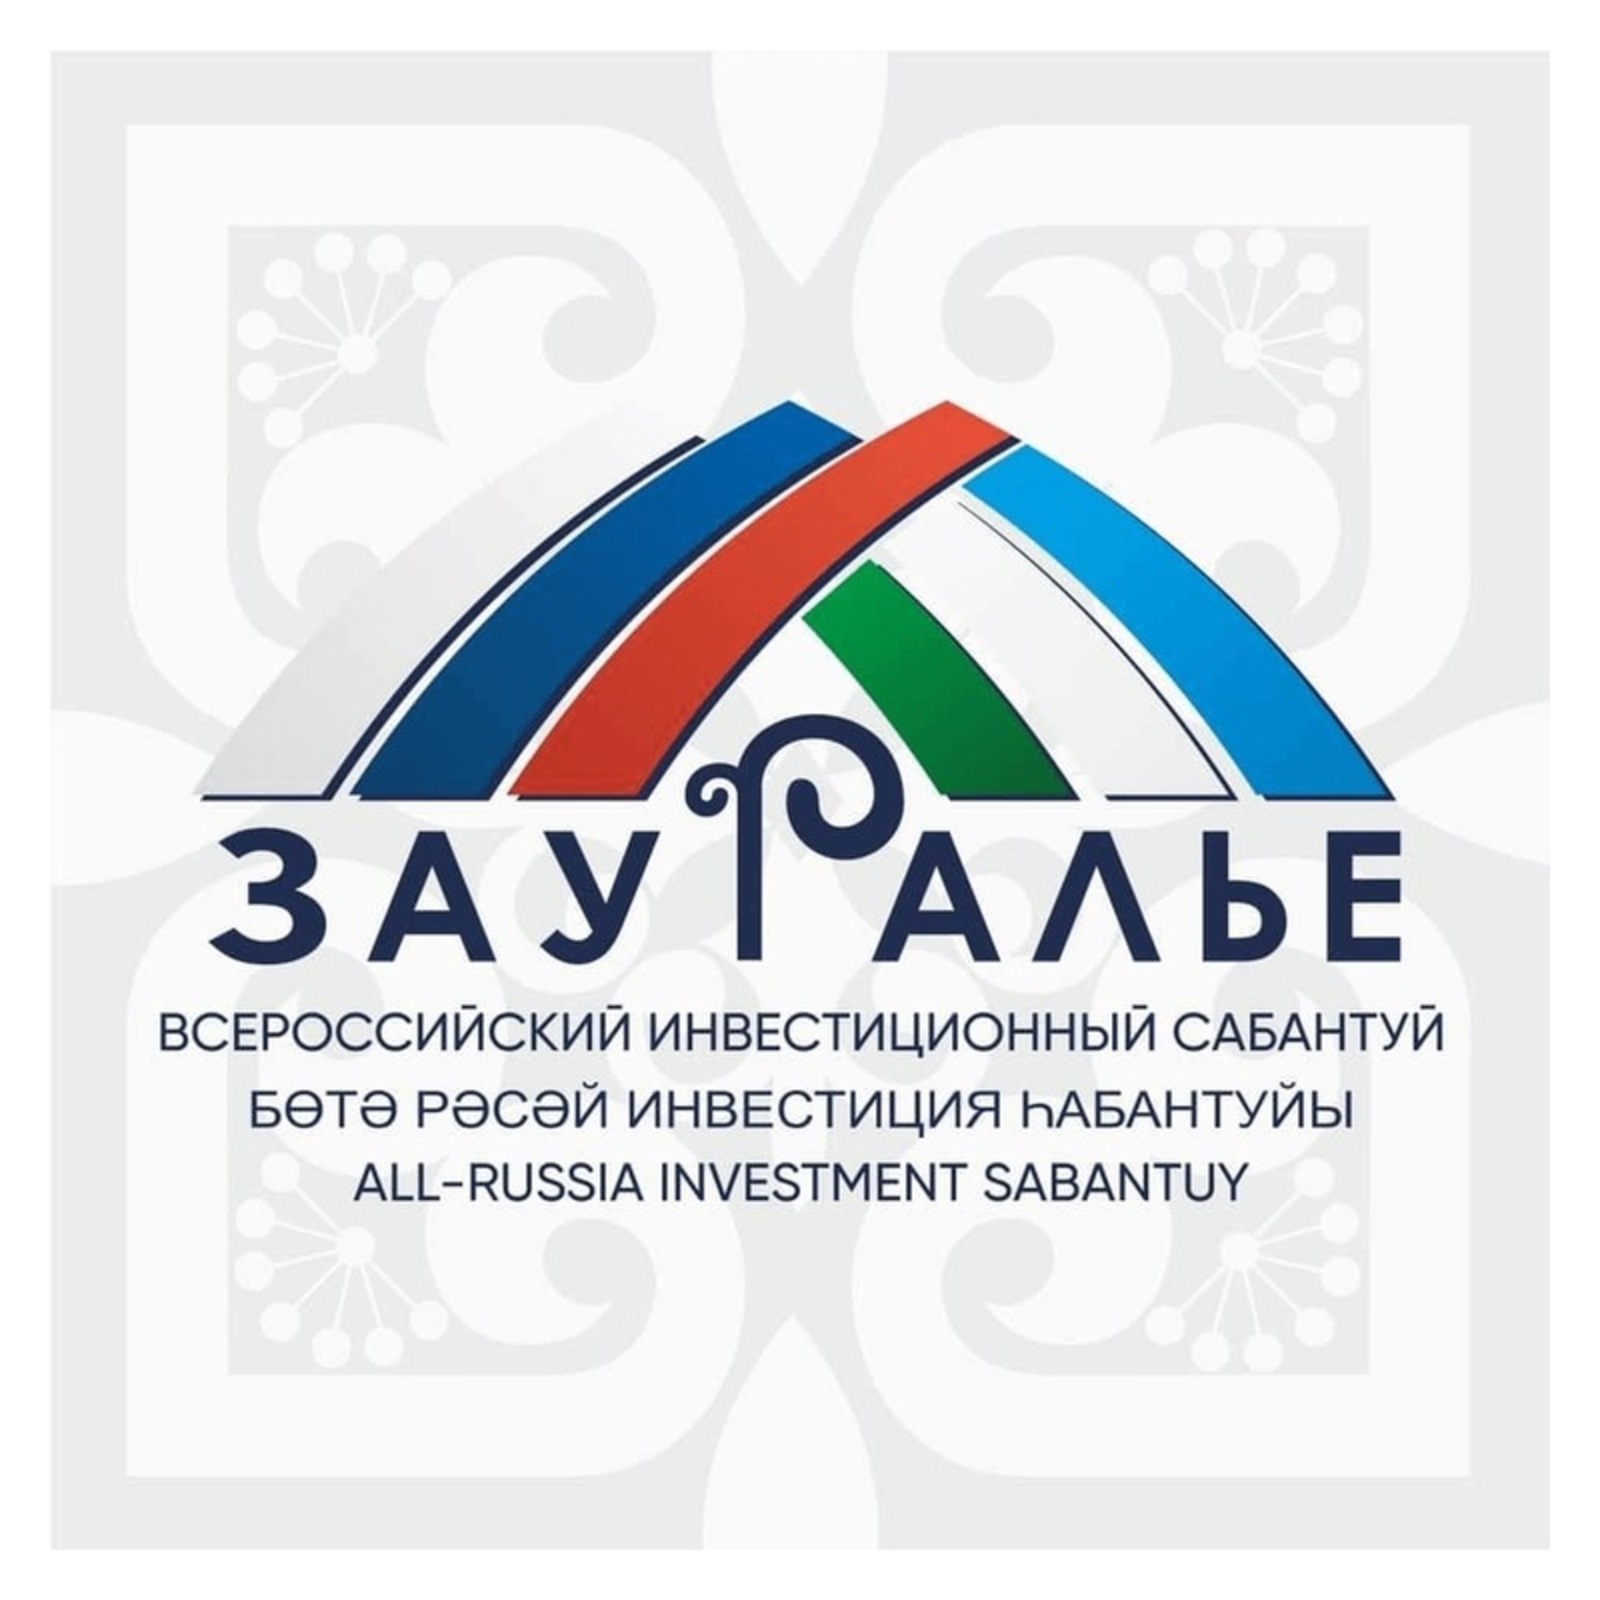 В Башкортостане реализуют инвестпроект по глубокой переработке гороха на 5 млрд рублей